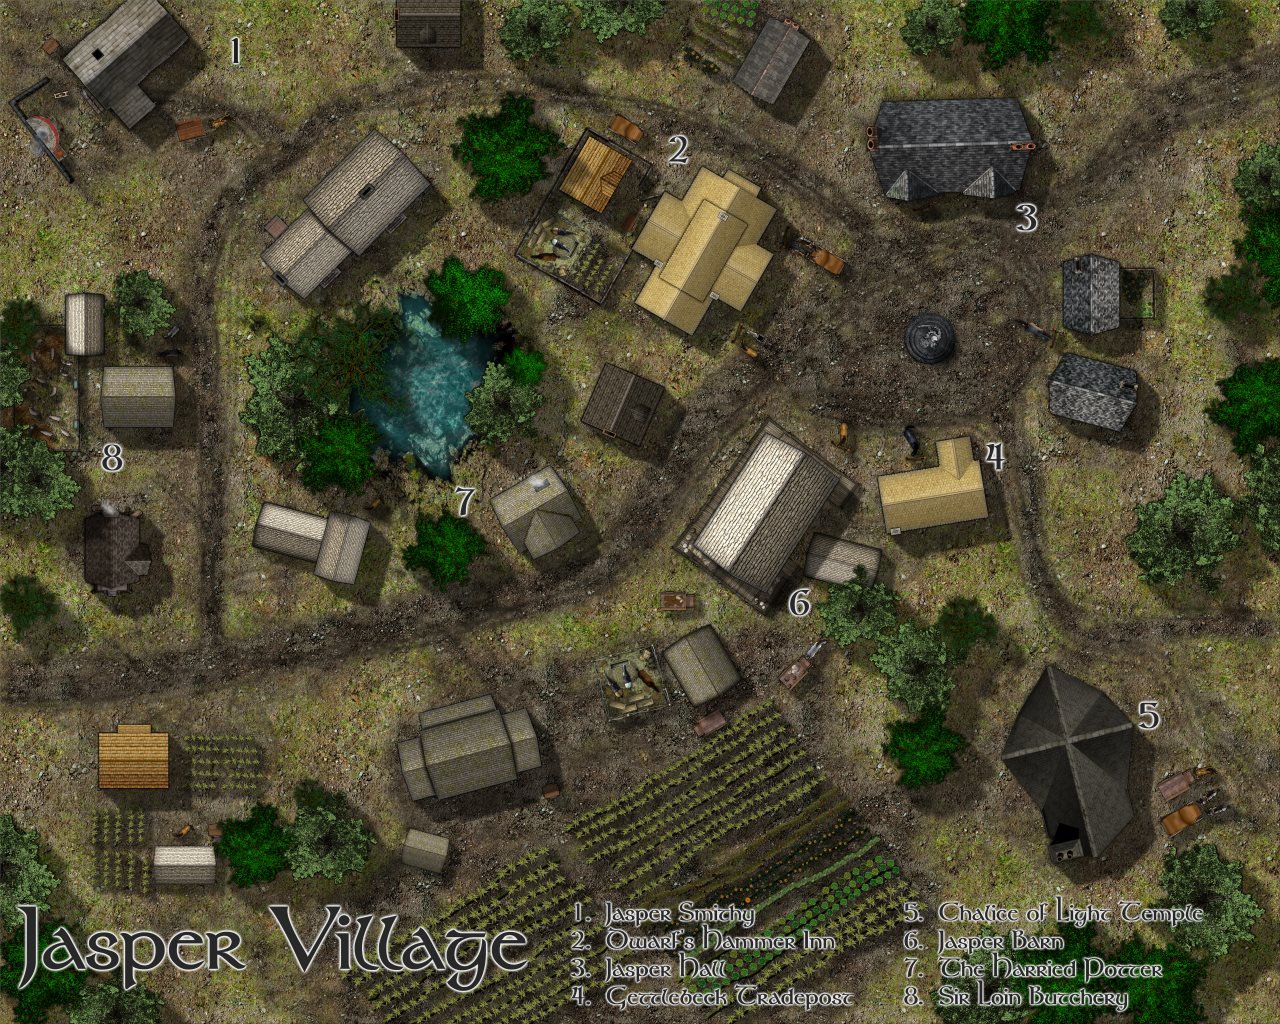 Nibirum Map: jasper village by Lorelei